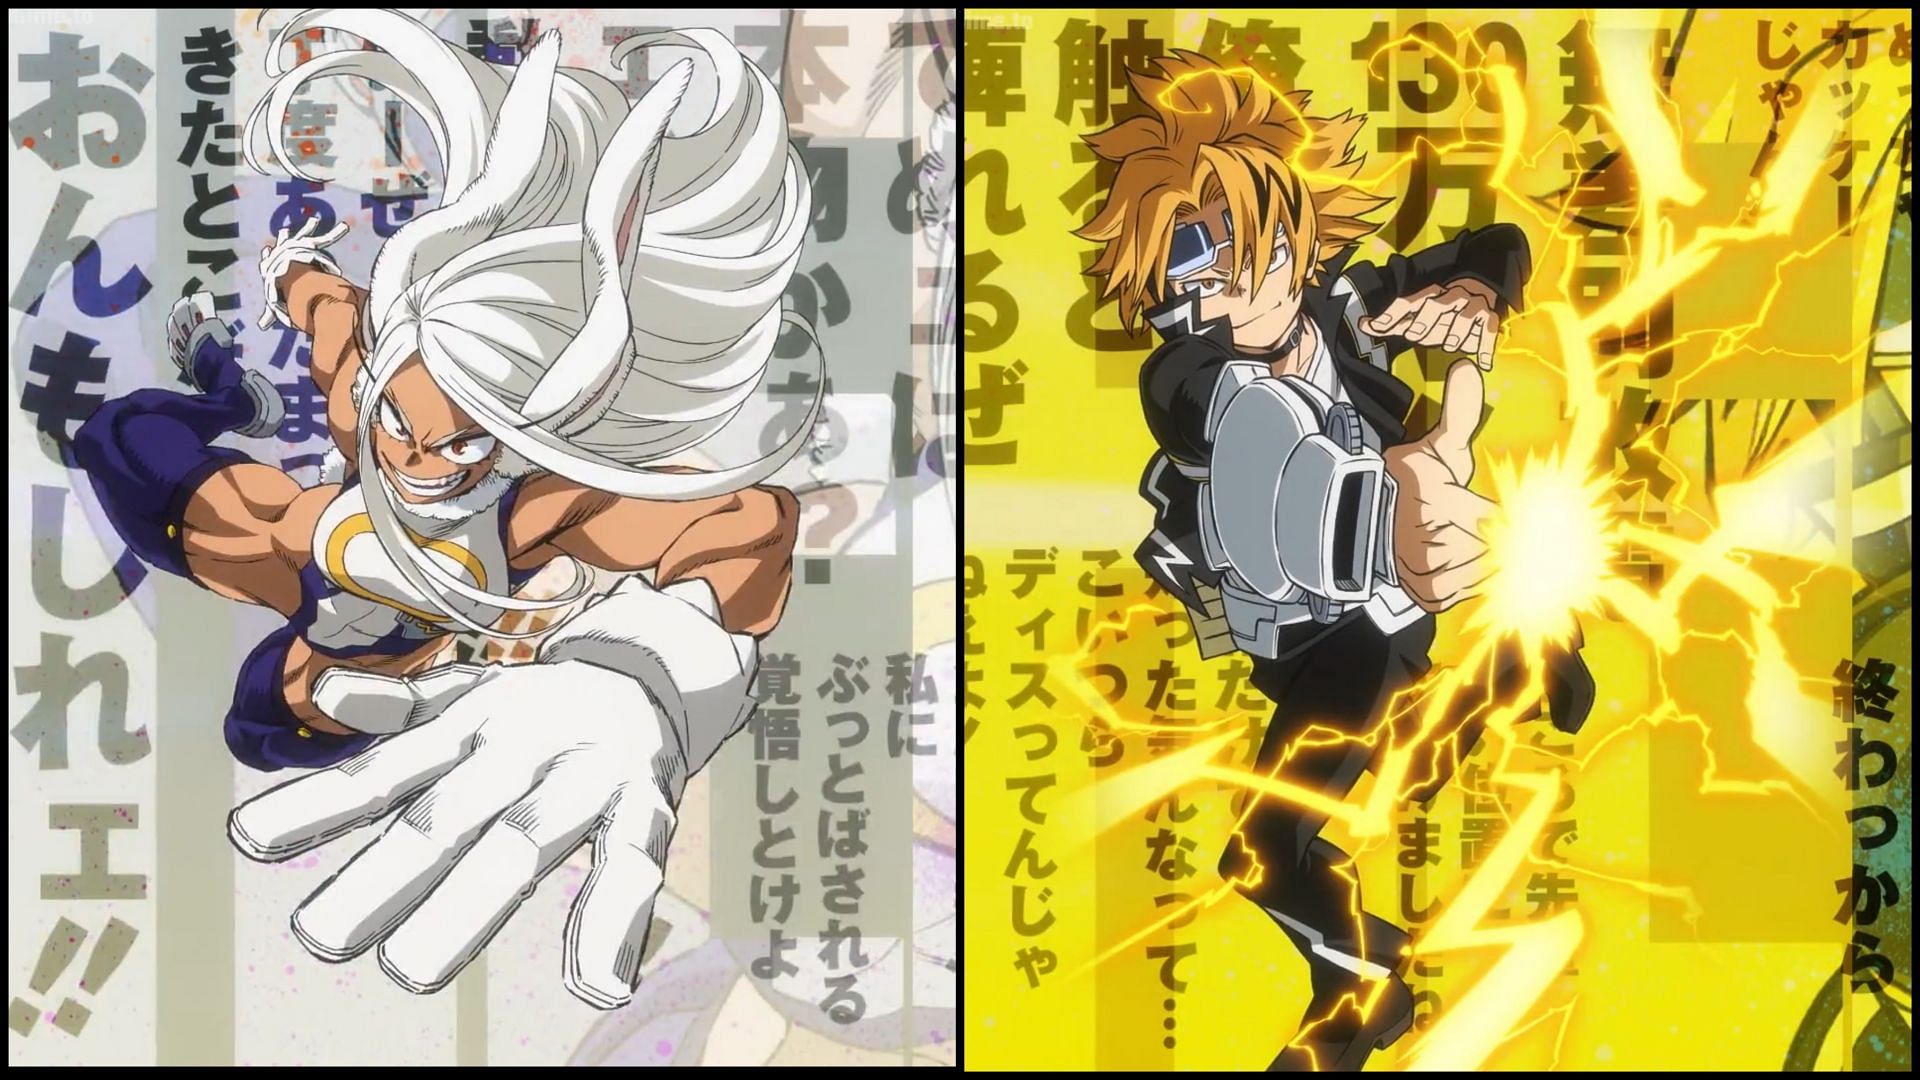 MHA Season 6 Episode 2 Anime vs Manga